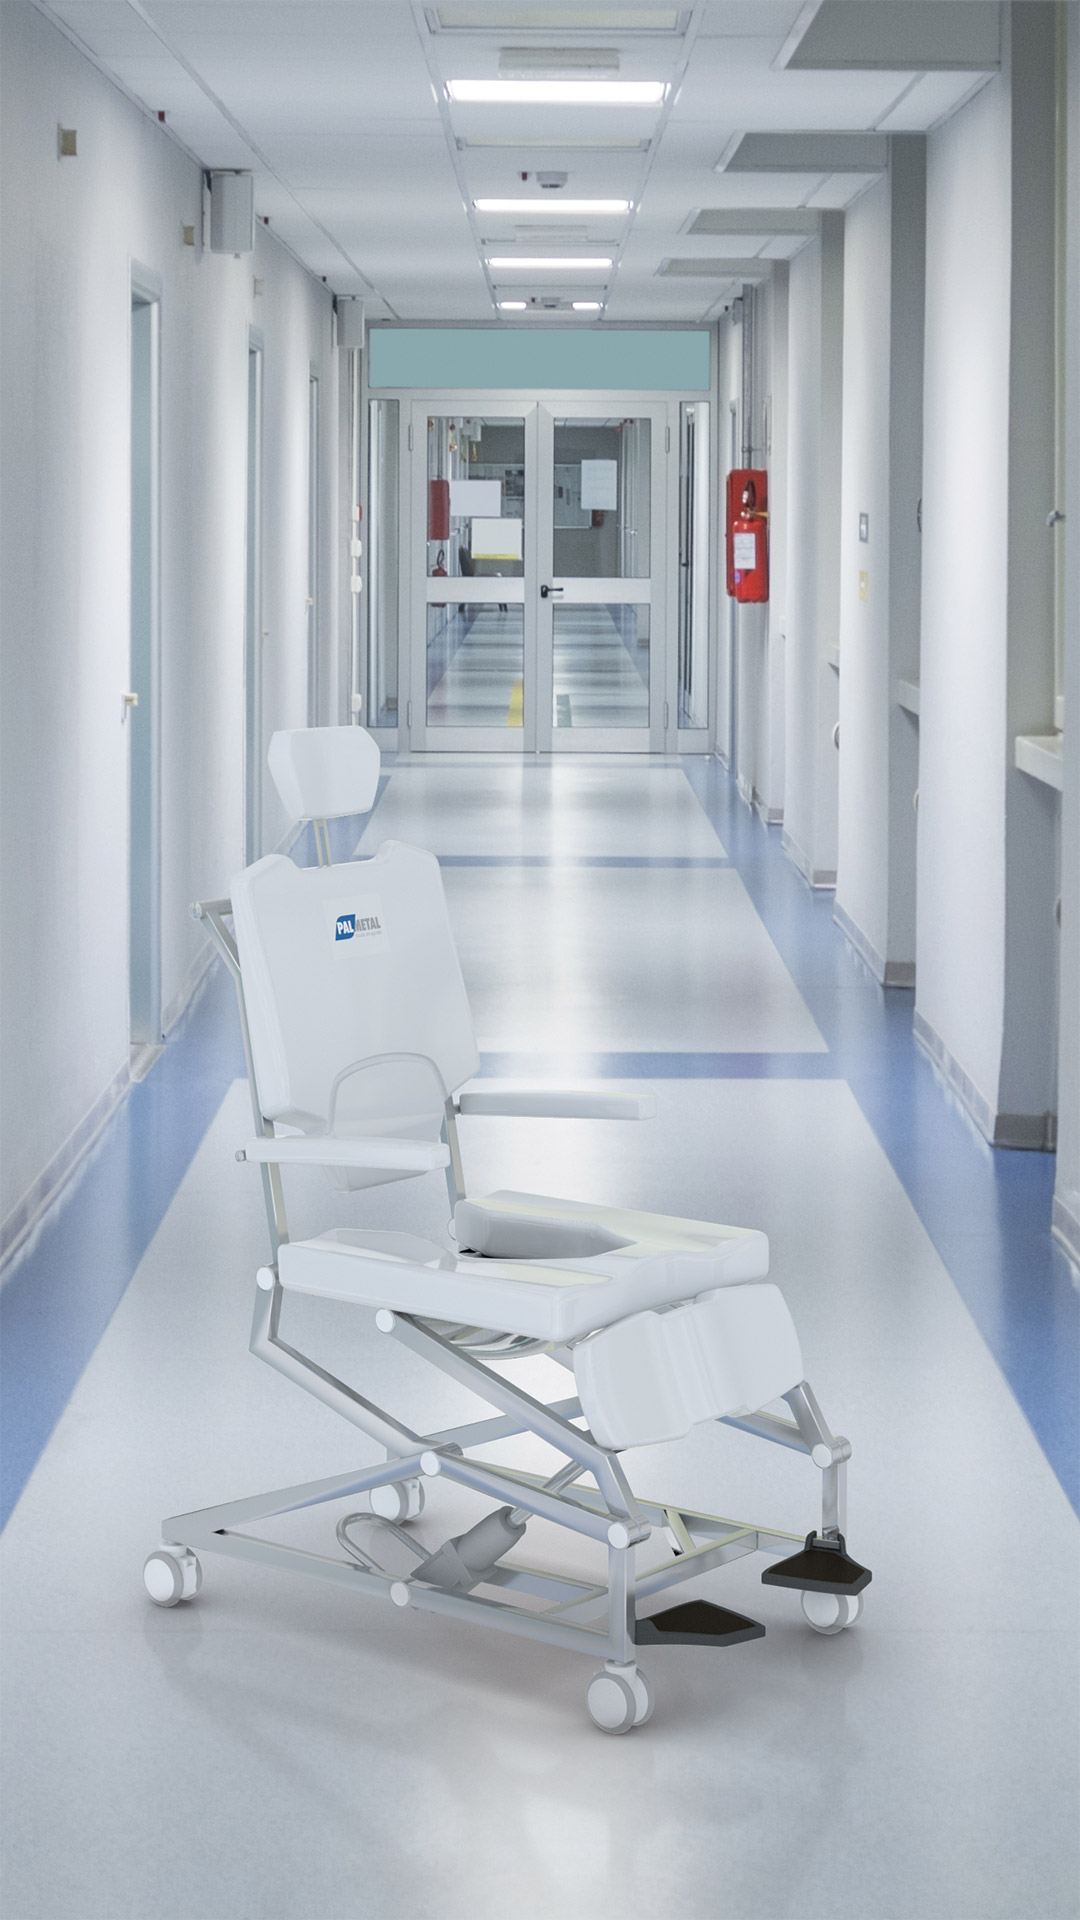 cadeira de banho palmetal no corredor do hospital